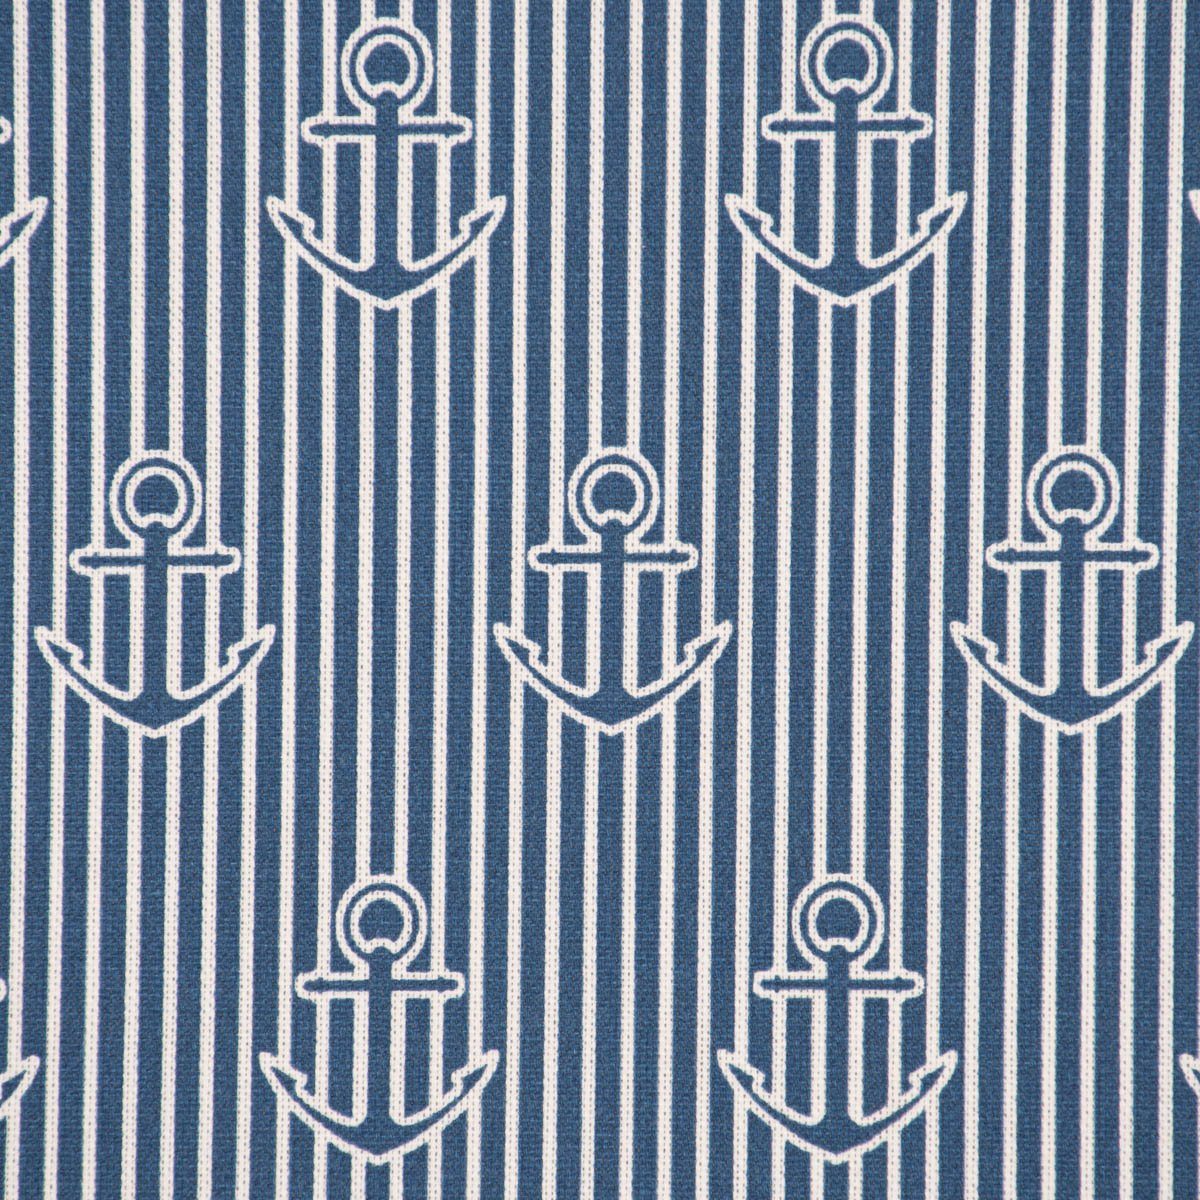 SCHÖNER SCHÖNER Streifen Iconic Tischläufer Stripe Anker LEBEN. Tischläufer handmade Anchor w, LEBEN. blau